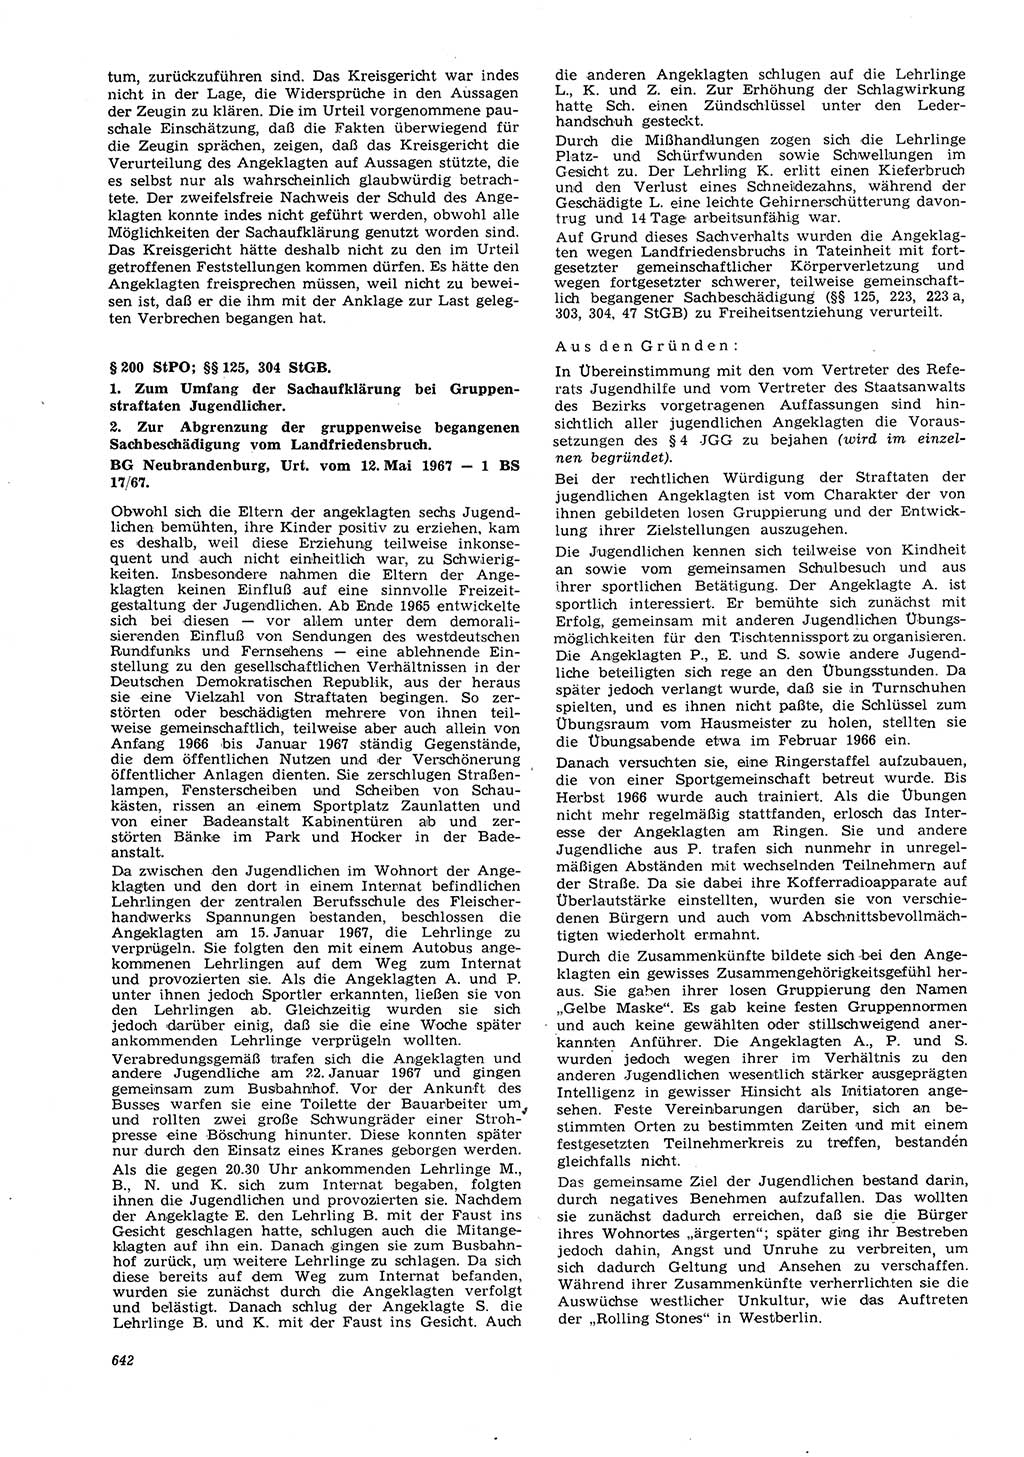 Neue Justiz (NJ), Zeitschrift für Recht und Rechtswissenschaft [Deutsche Demokratische Republik (DDR)], 21. Jahrgang 1967, Seite 642 (NJ DDR 1967, S. 642)